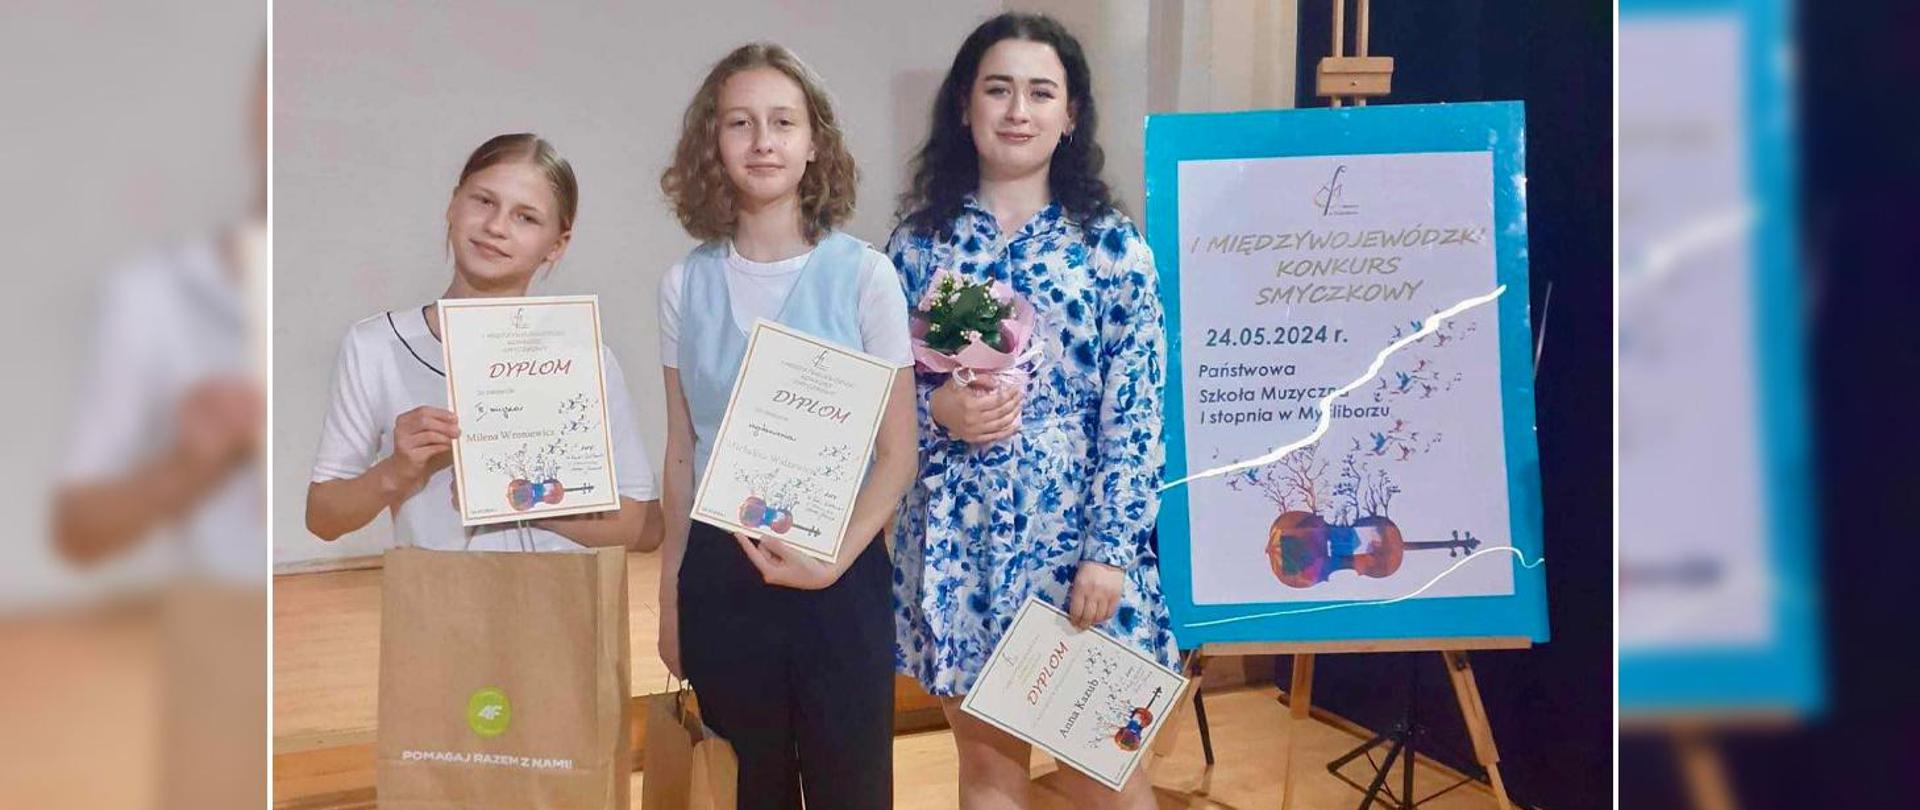 Na zdjęciu dwie uczennice i nauczycielka stoją obok banera I Międzywojewódzkiego Konkursu Smyczkowego. Wszystkie trzymają w rękach dyplomy. 